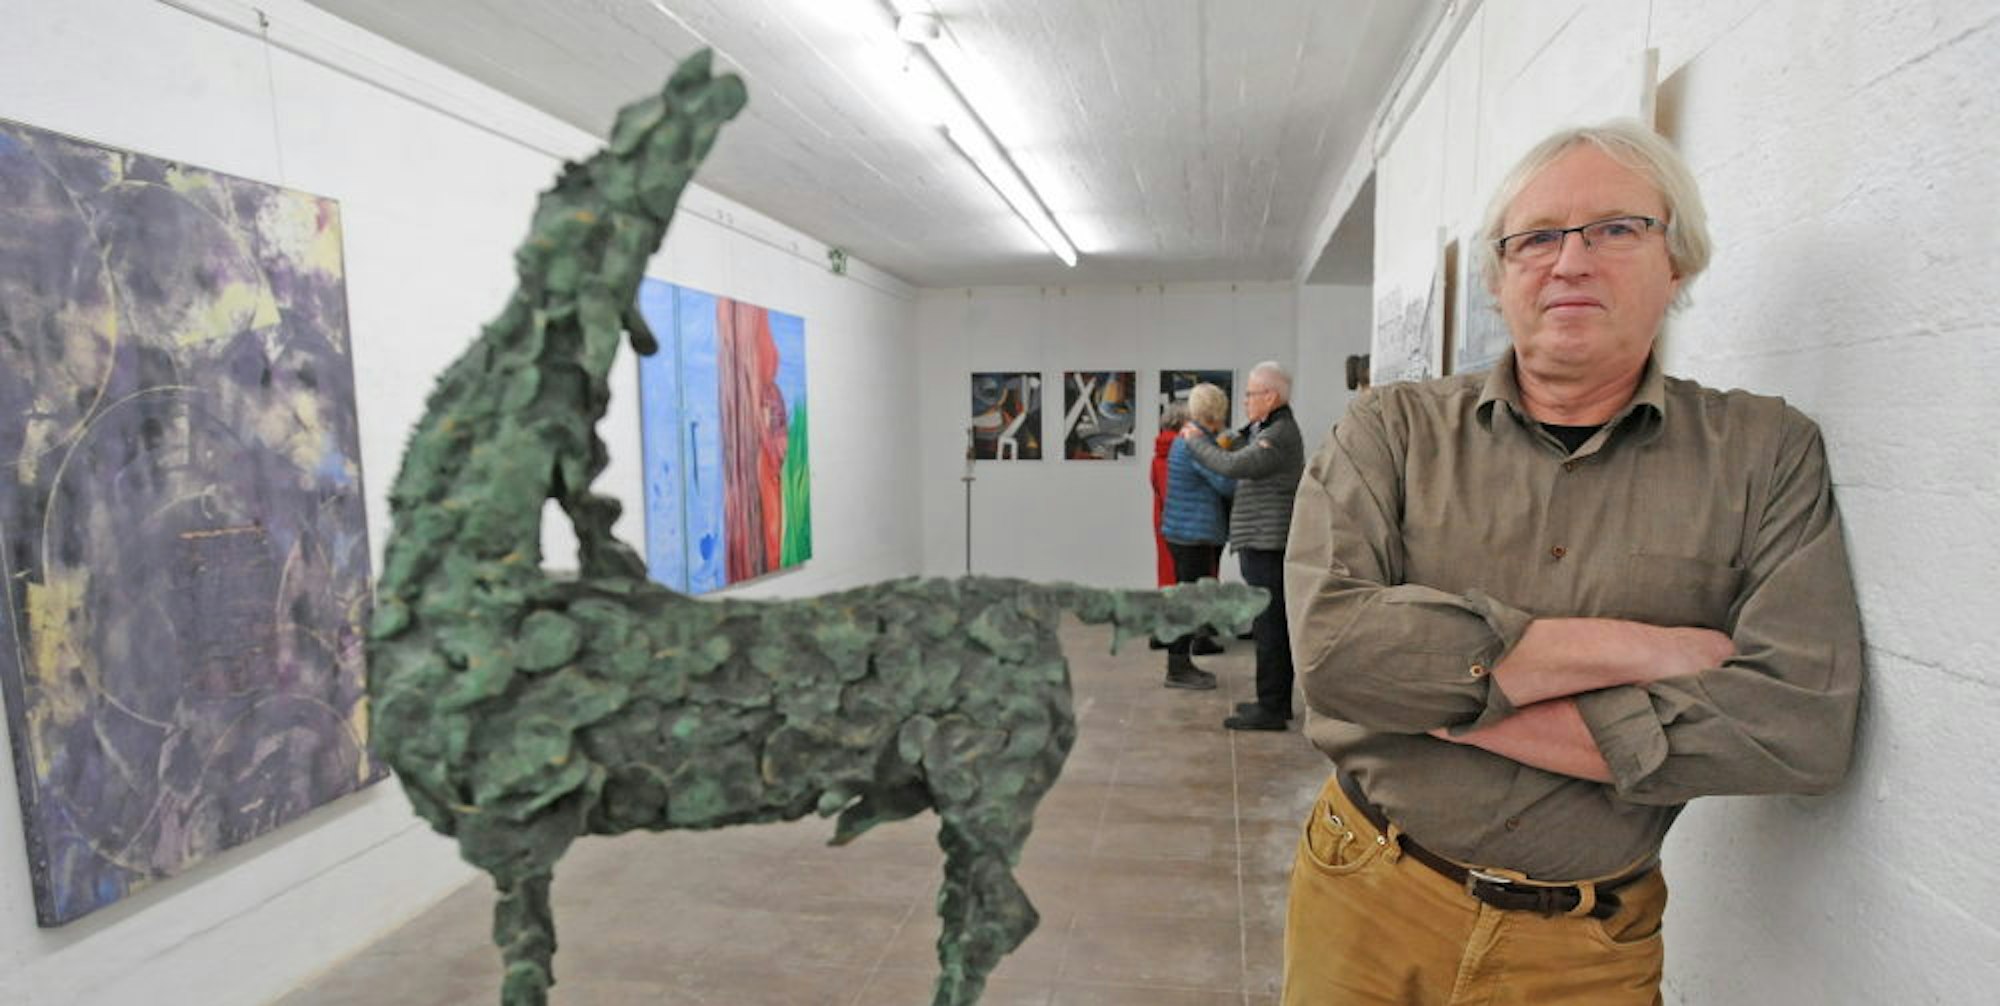 Jörg Steinert kam aus Schwedt und hatte unter anderem seine Pferdeskulpturen im Gepäck. Seine Findlinge wären zu schwer gewesen.